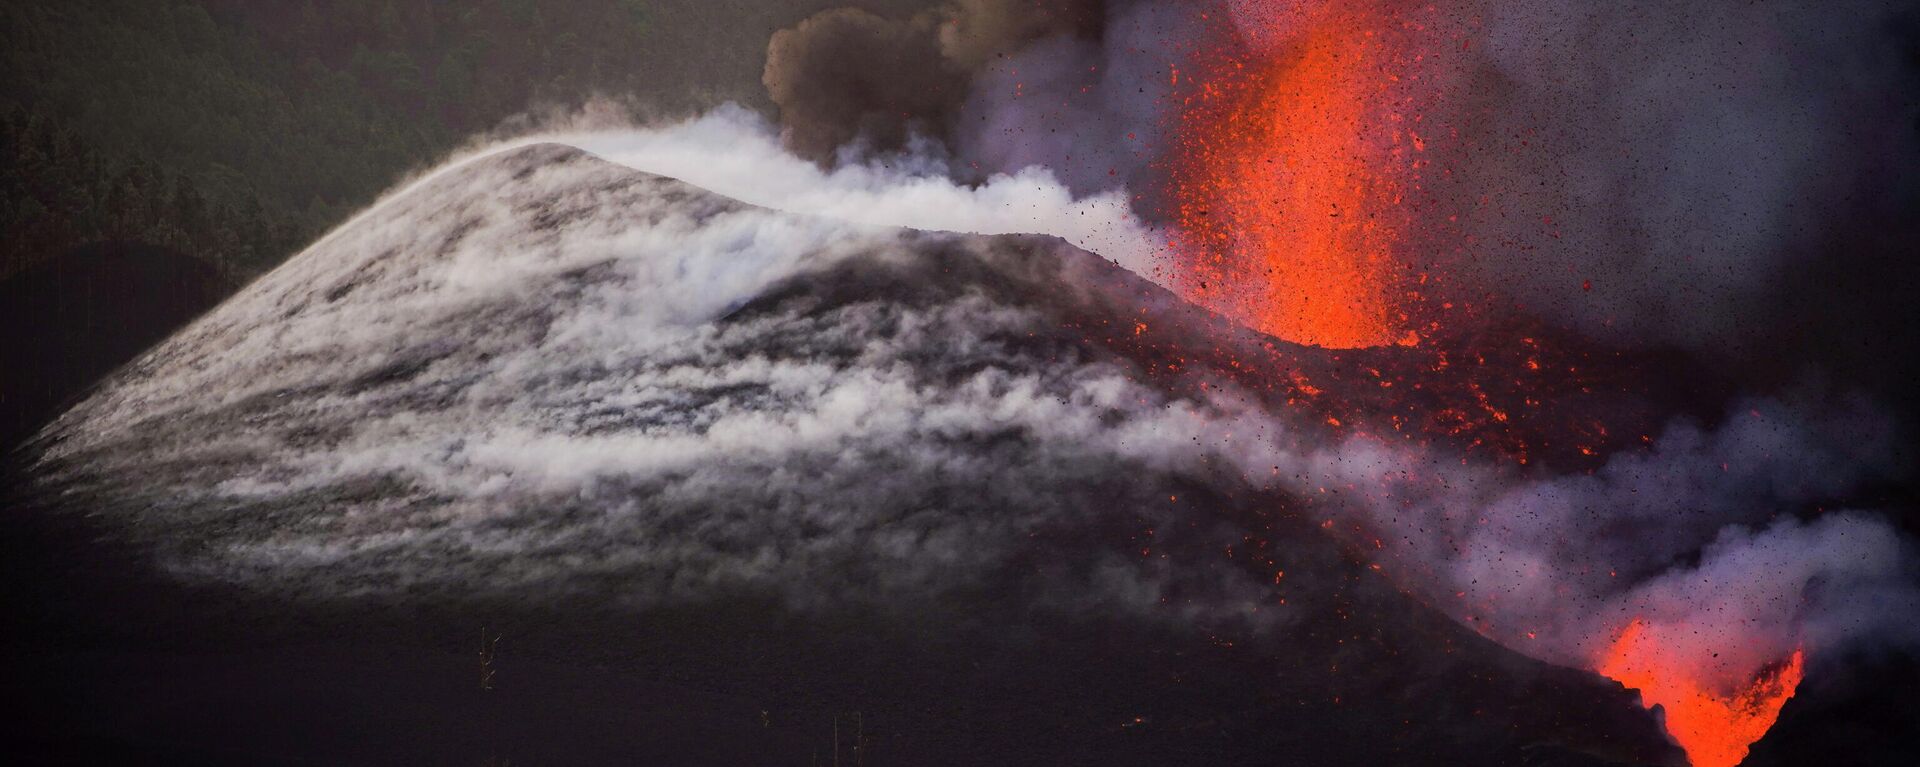 Erupción del volcán en La Palma - Sputnik Mundo, 1920, 08.10.2021